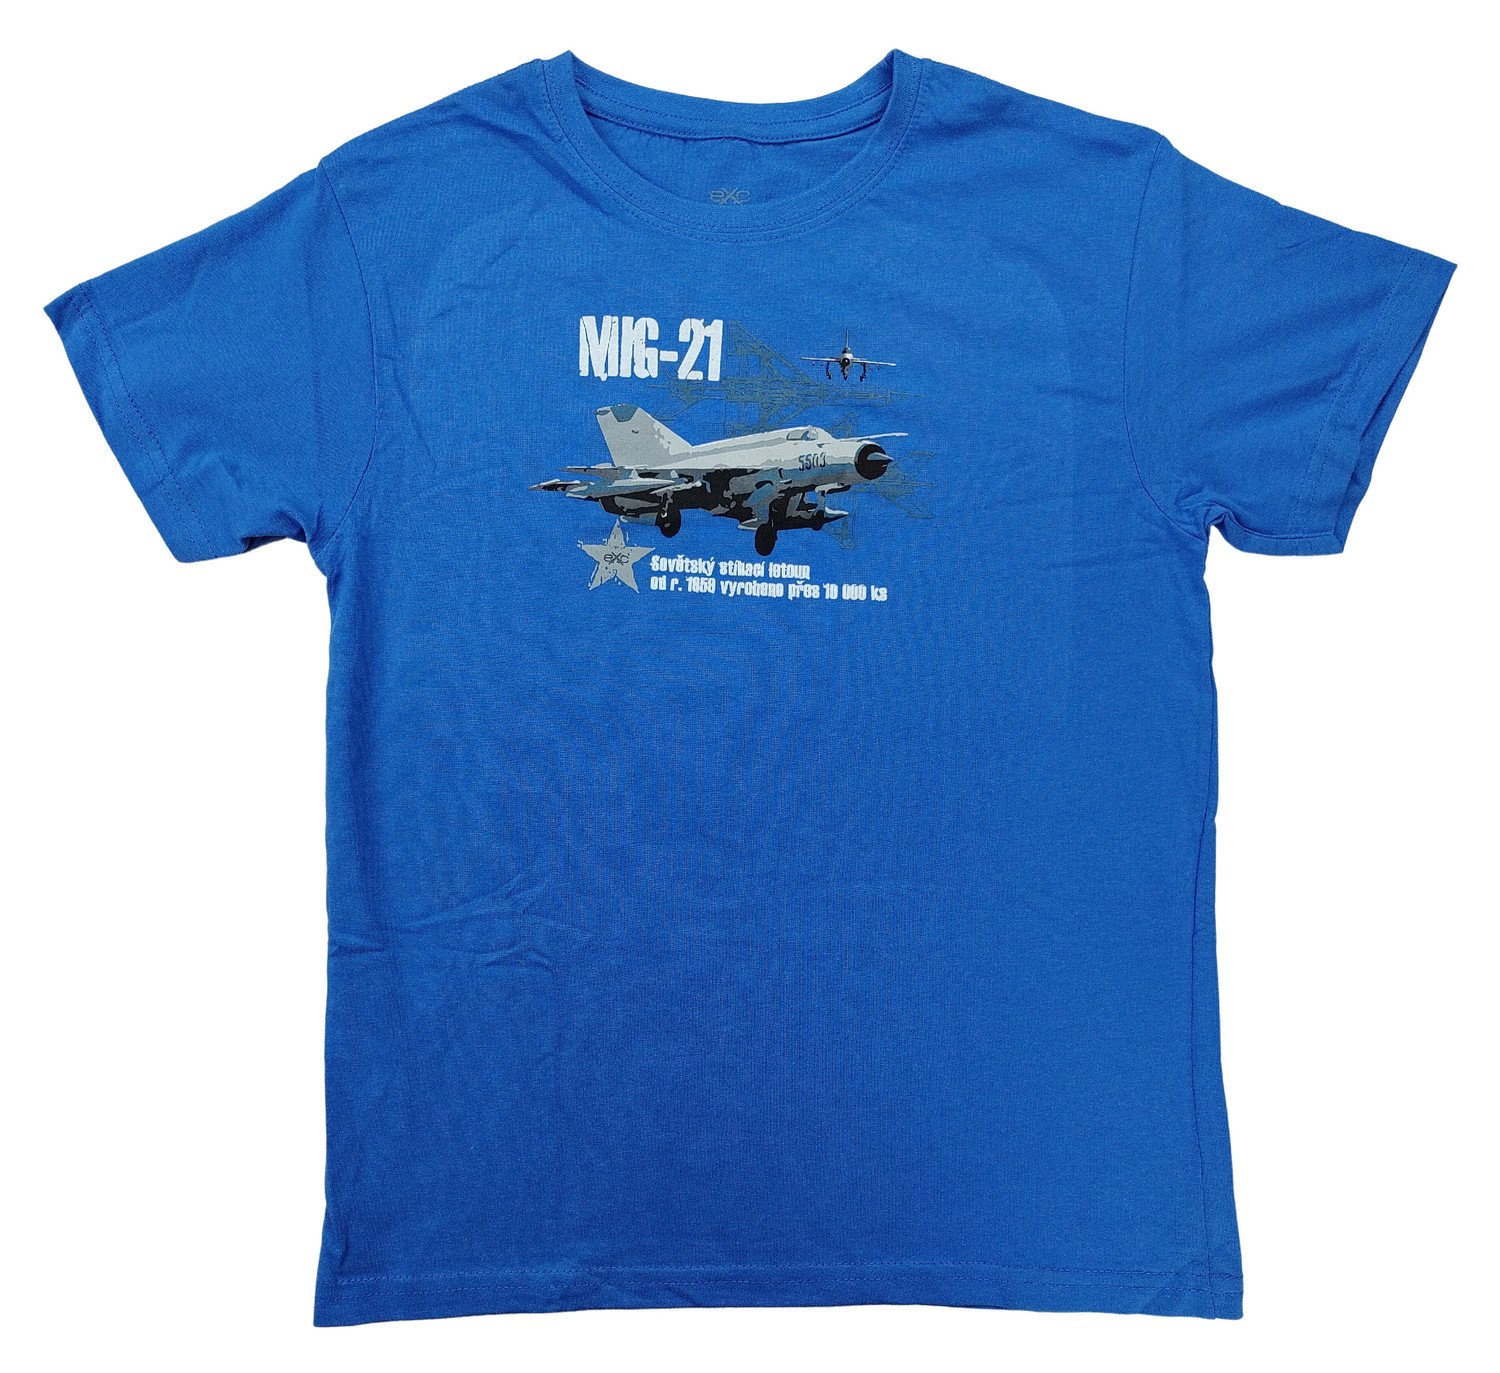 Triko dětské s potiskem MIG-21 sovětský stíhací letoun Mikojan-Gurevič modré EXC® Vyberte velikost: 110